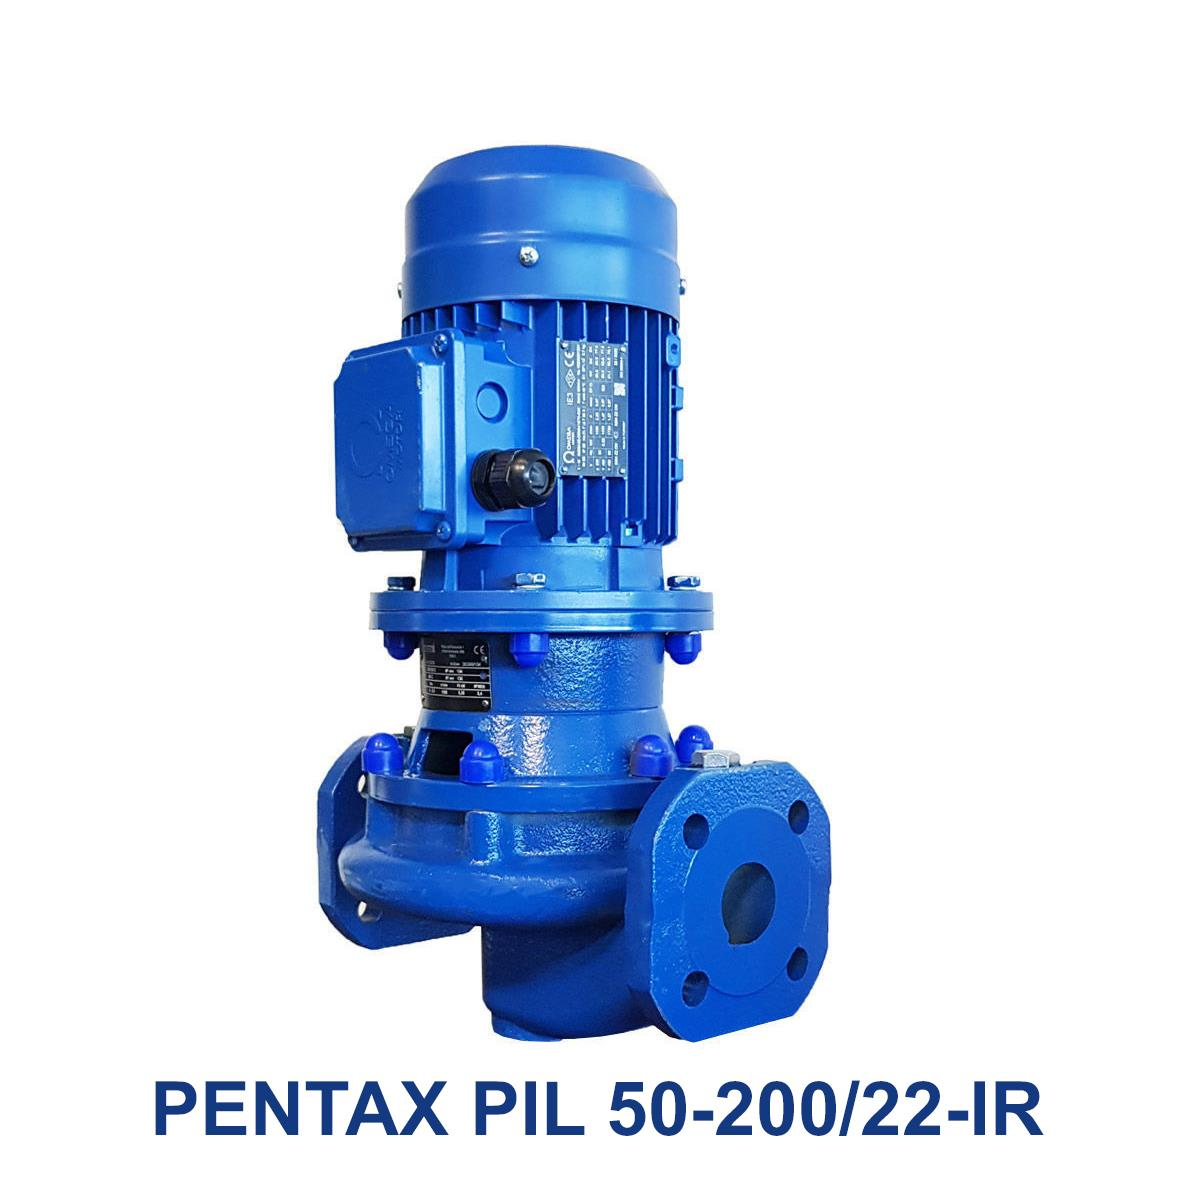 PENTAX-PIL-50-200-22-IR